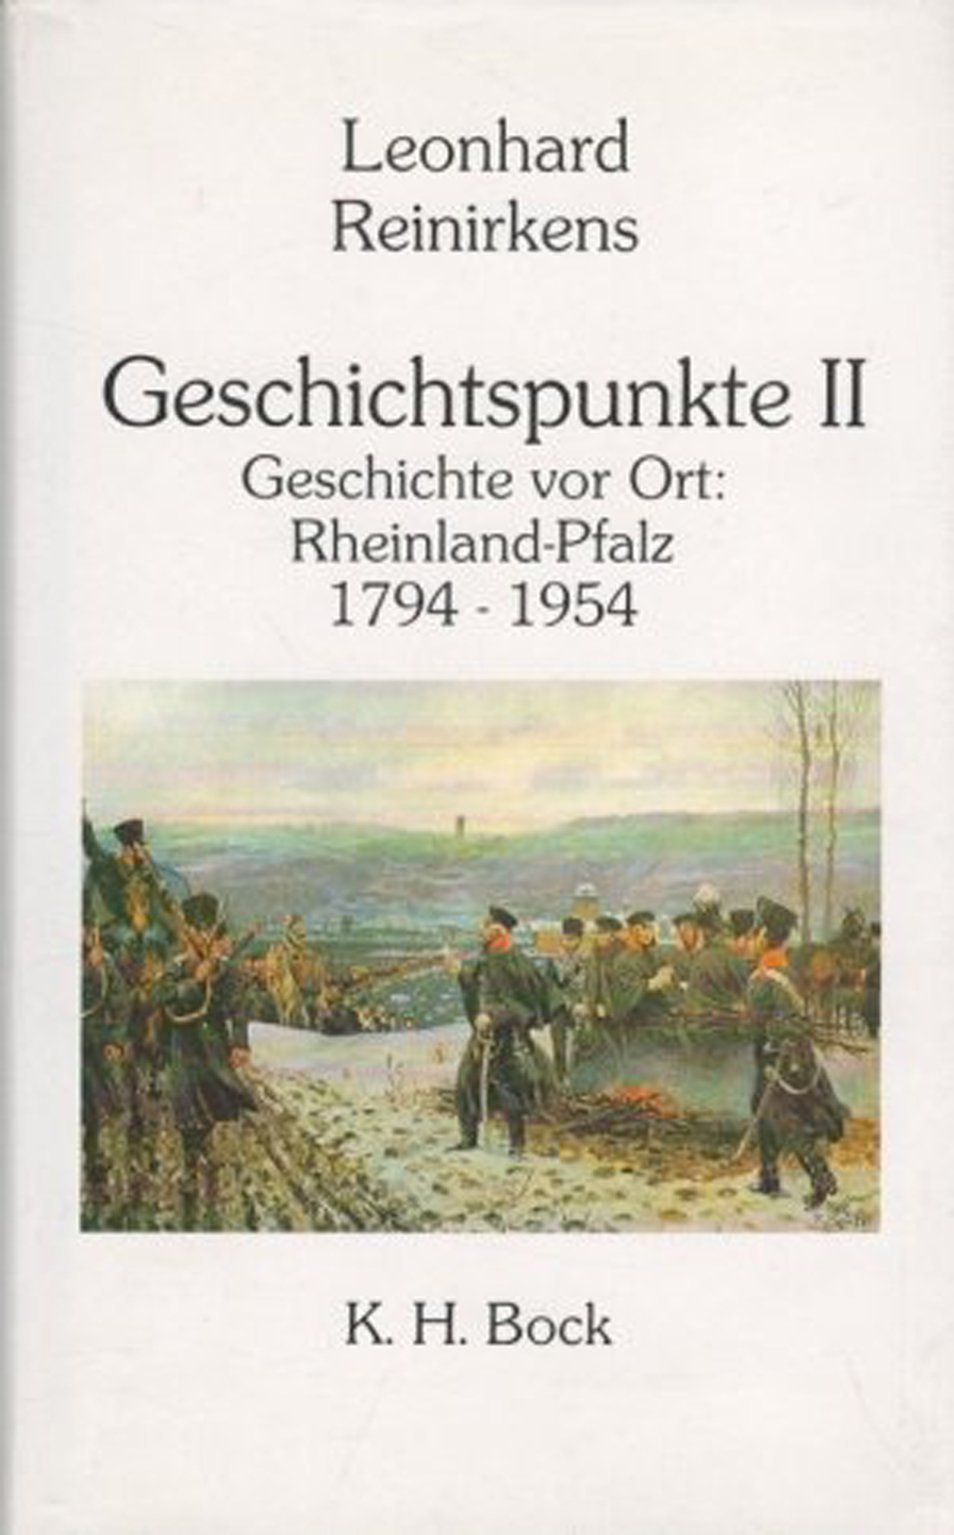 Geschichtspunkte II: Geschichte vor Ort: Rheinland-Pfalz 1794 - 1954 (Verlag K. H. Bock CC BY-NC-SA)